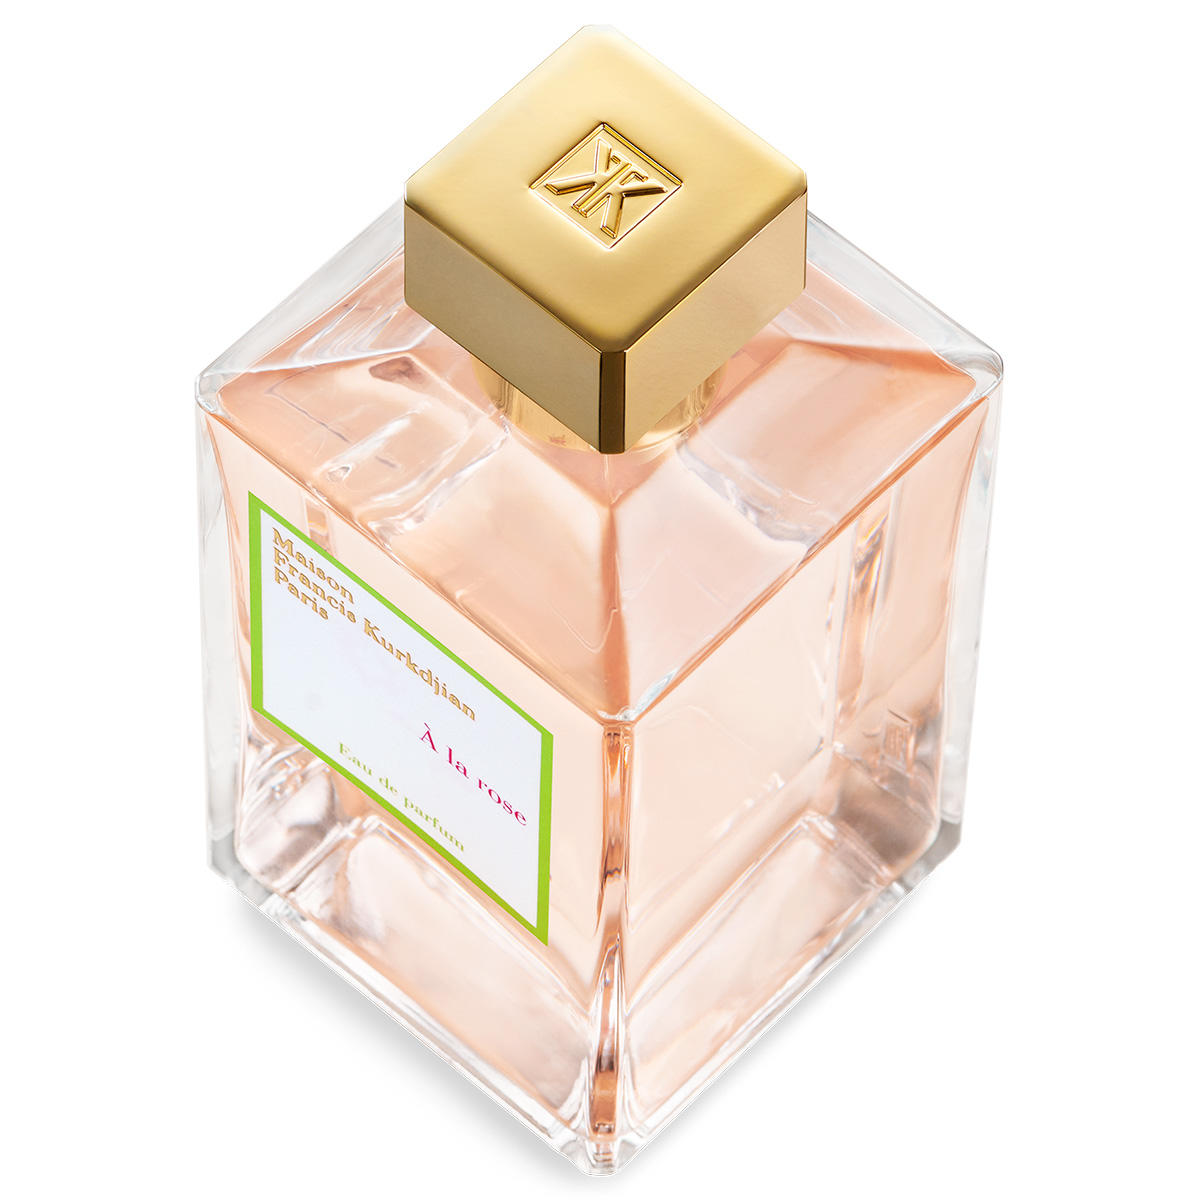 Maison Francis Kurkdjian Paris À La Rose Eau de Parfum 200 ml - 2